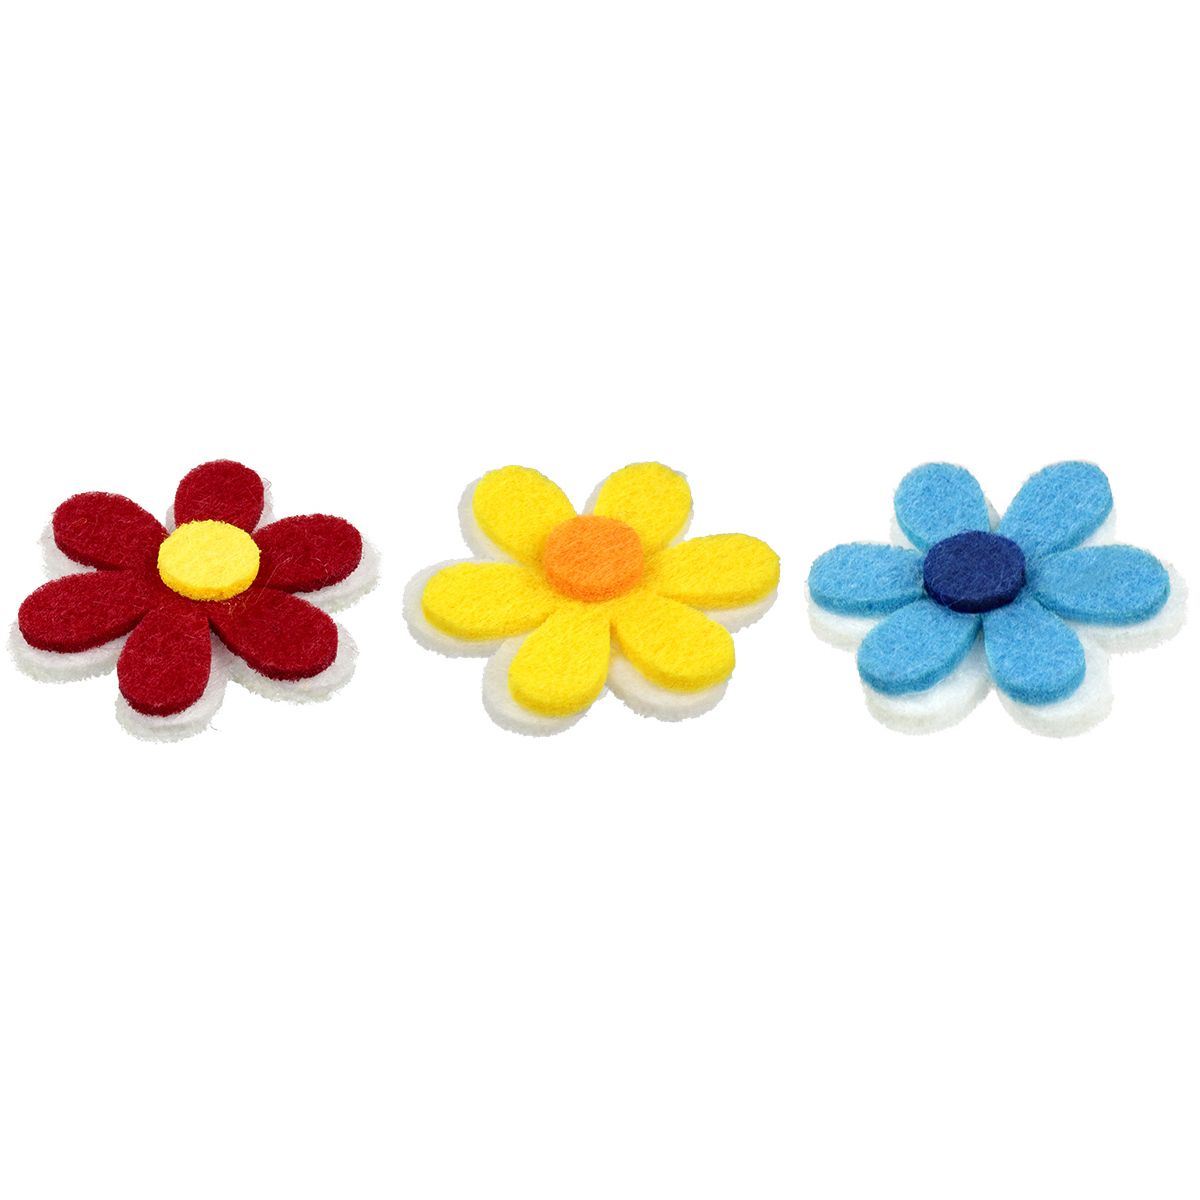 Ozdoba filcowa Titanum Craft-Fun Series kwiatki (20HY0402-24)